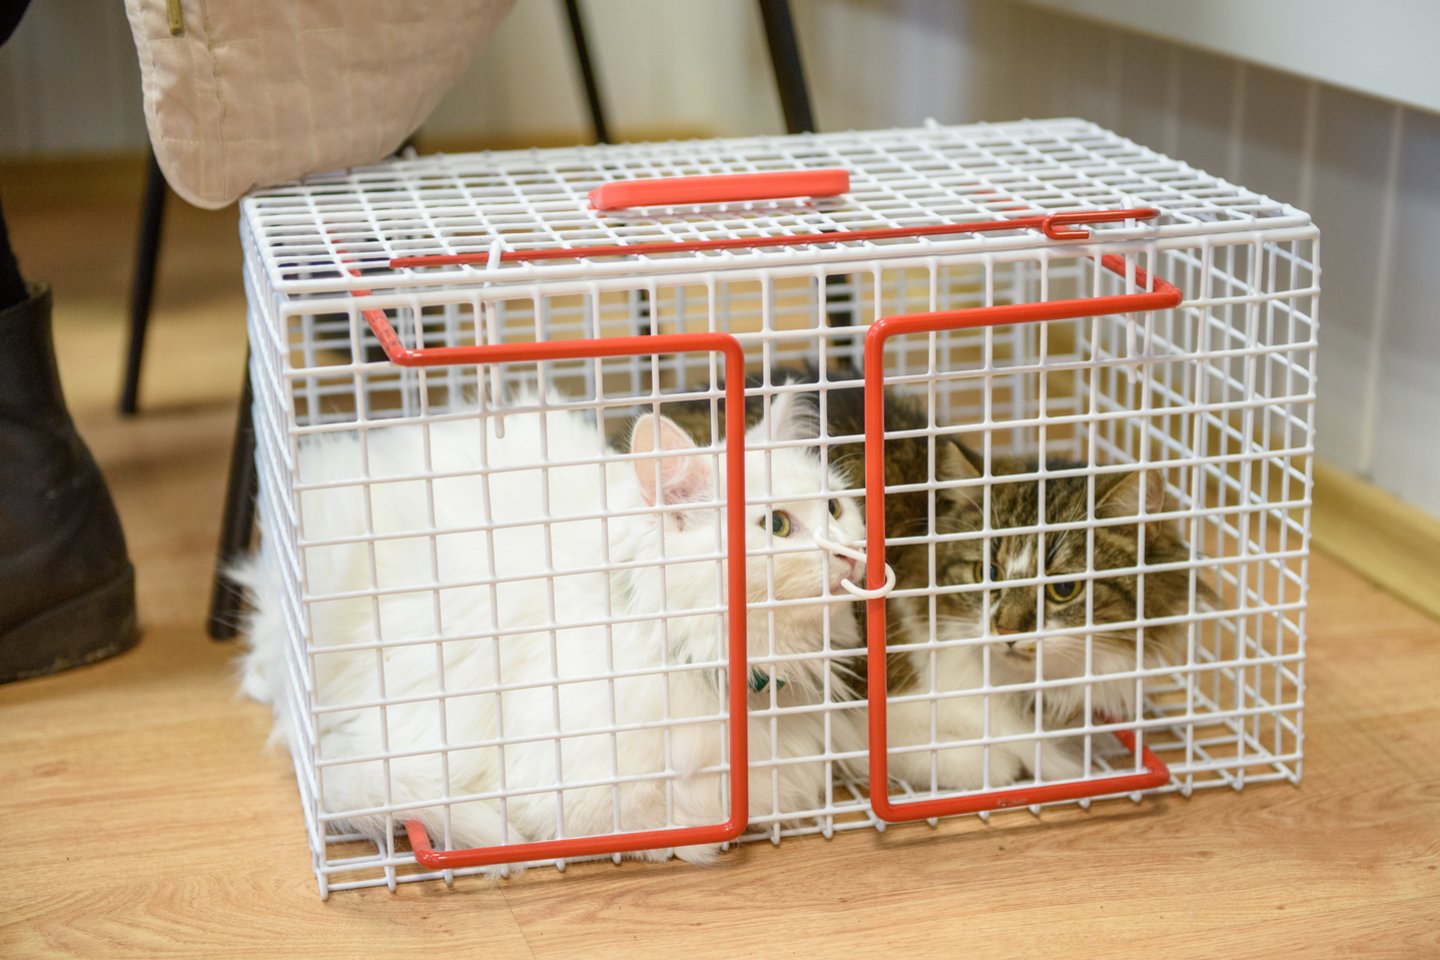 Per pirmąją balandžio savaitę pagal PSP programą sterilizuota 41 katė.<br>D.Umbraso nuotr.